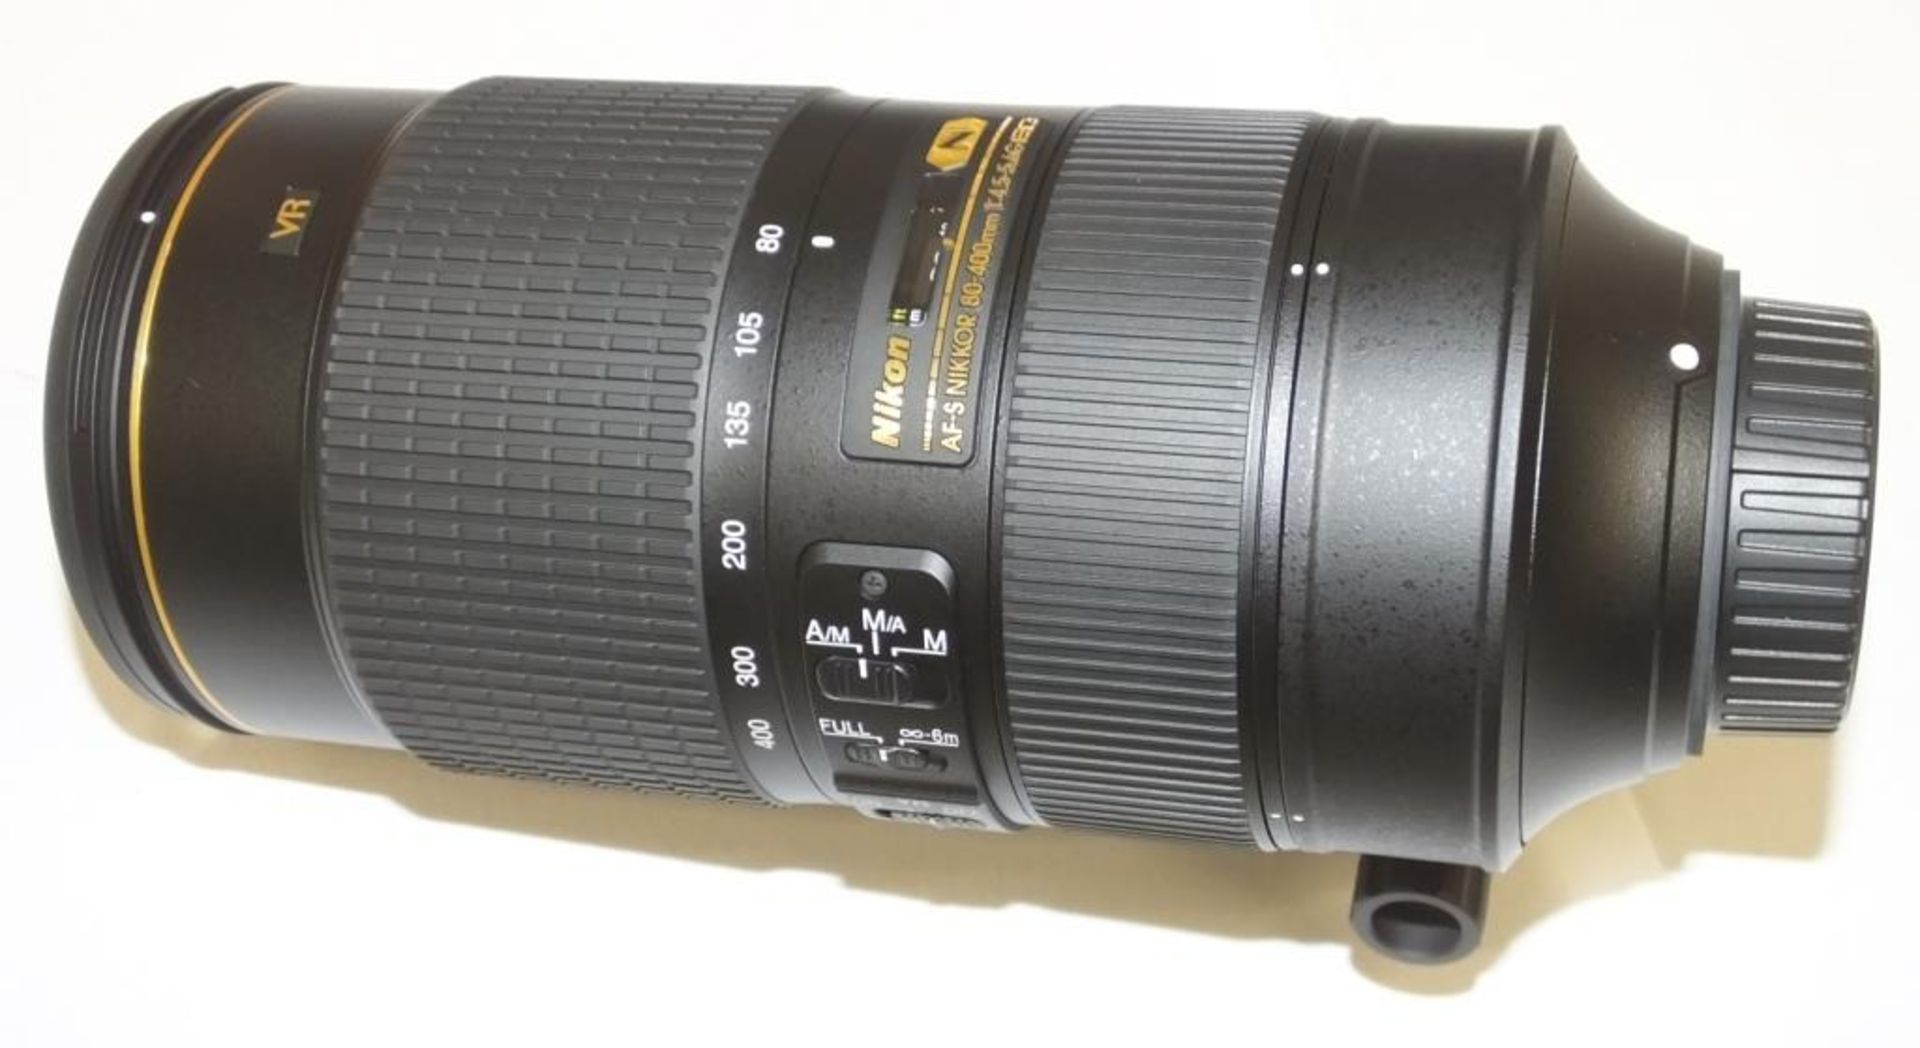 Nikon AF-S Nikkor 80-400mm F/4.5-5.6G ED VR Lens - Serial No. 268930 with Nikon CL-M2 Case - Image 2 of 7